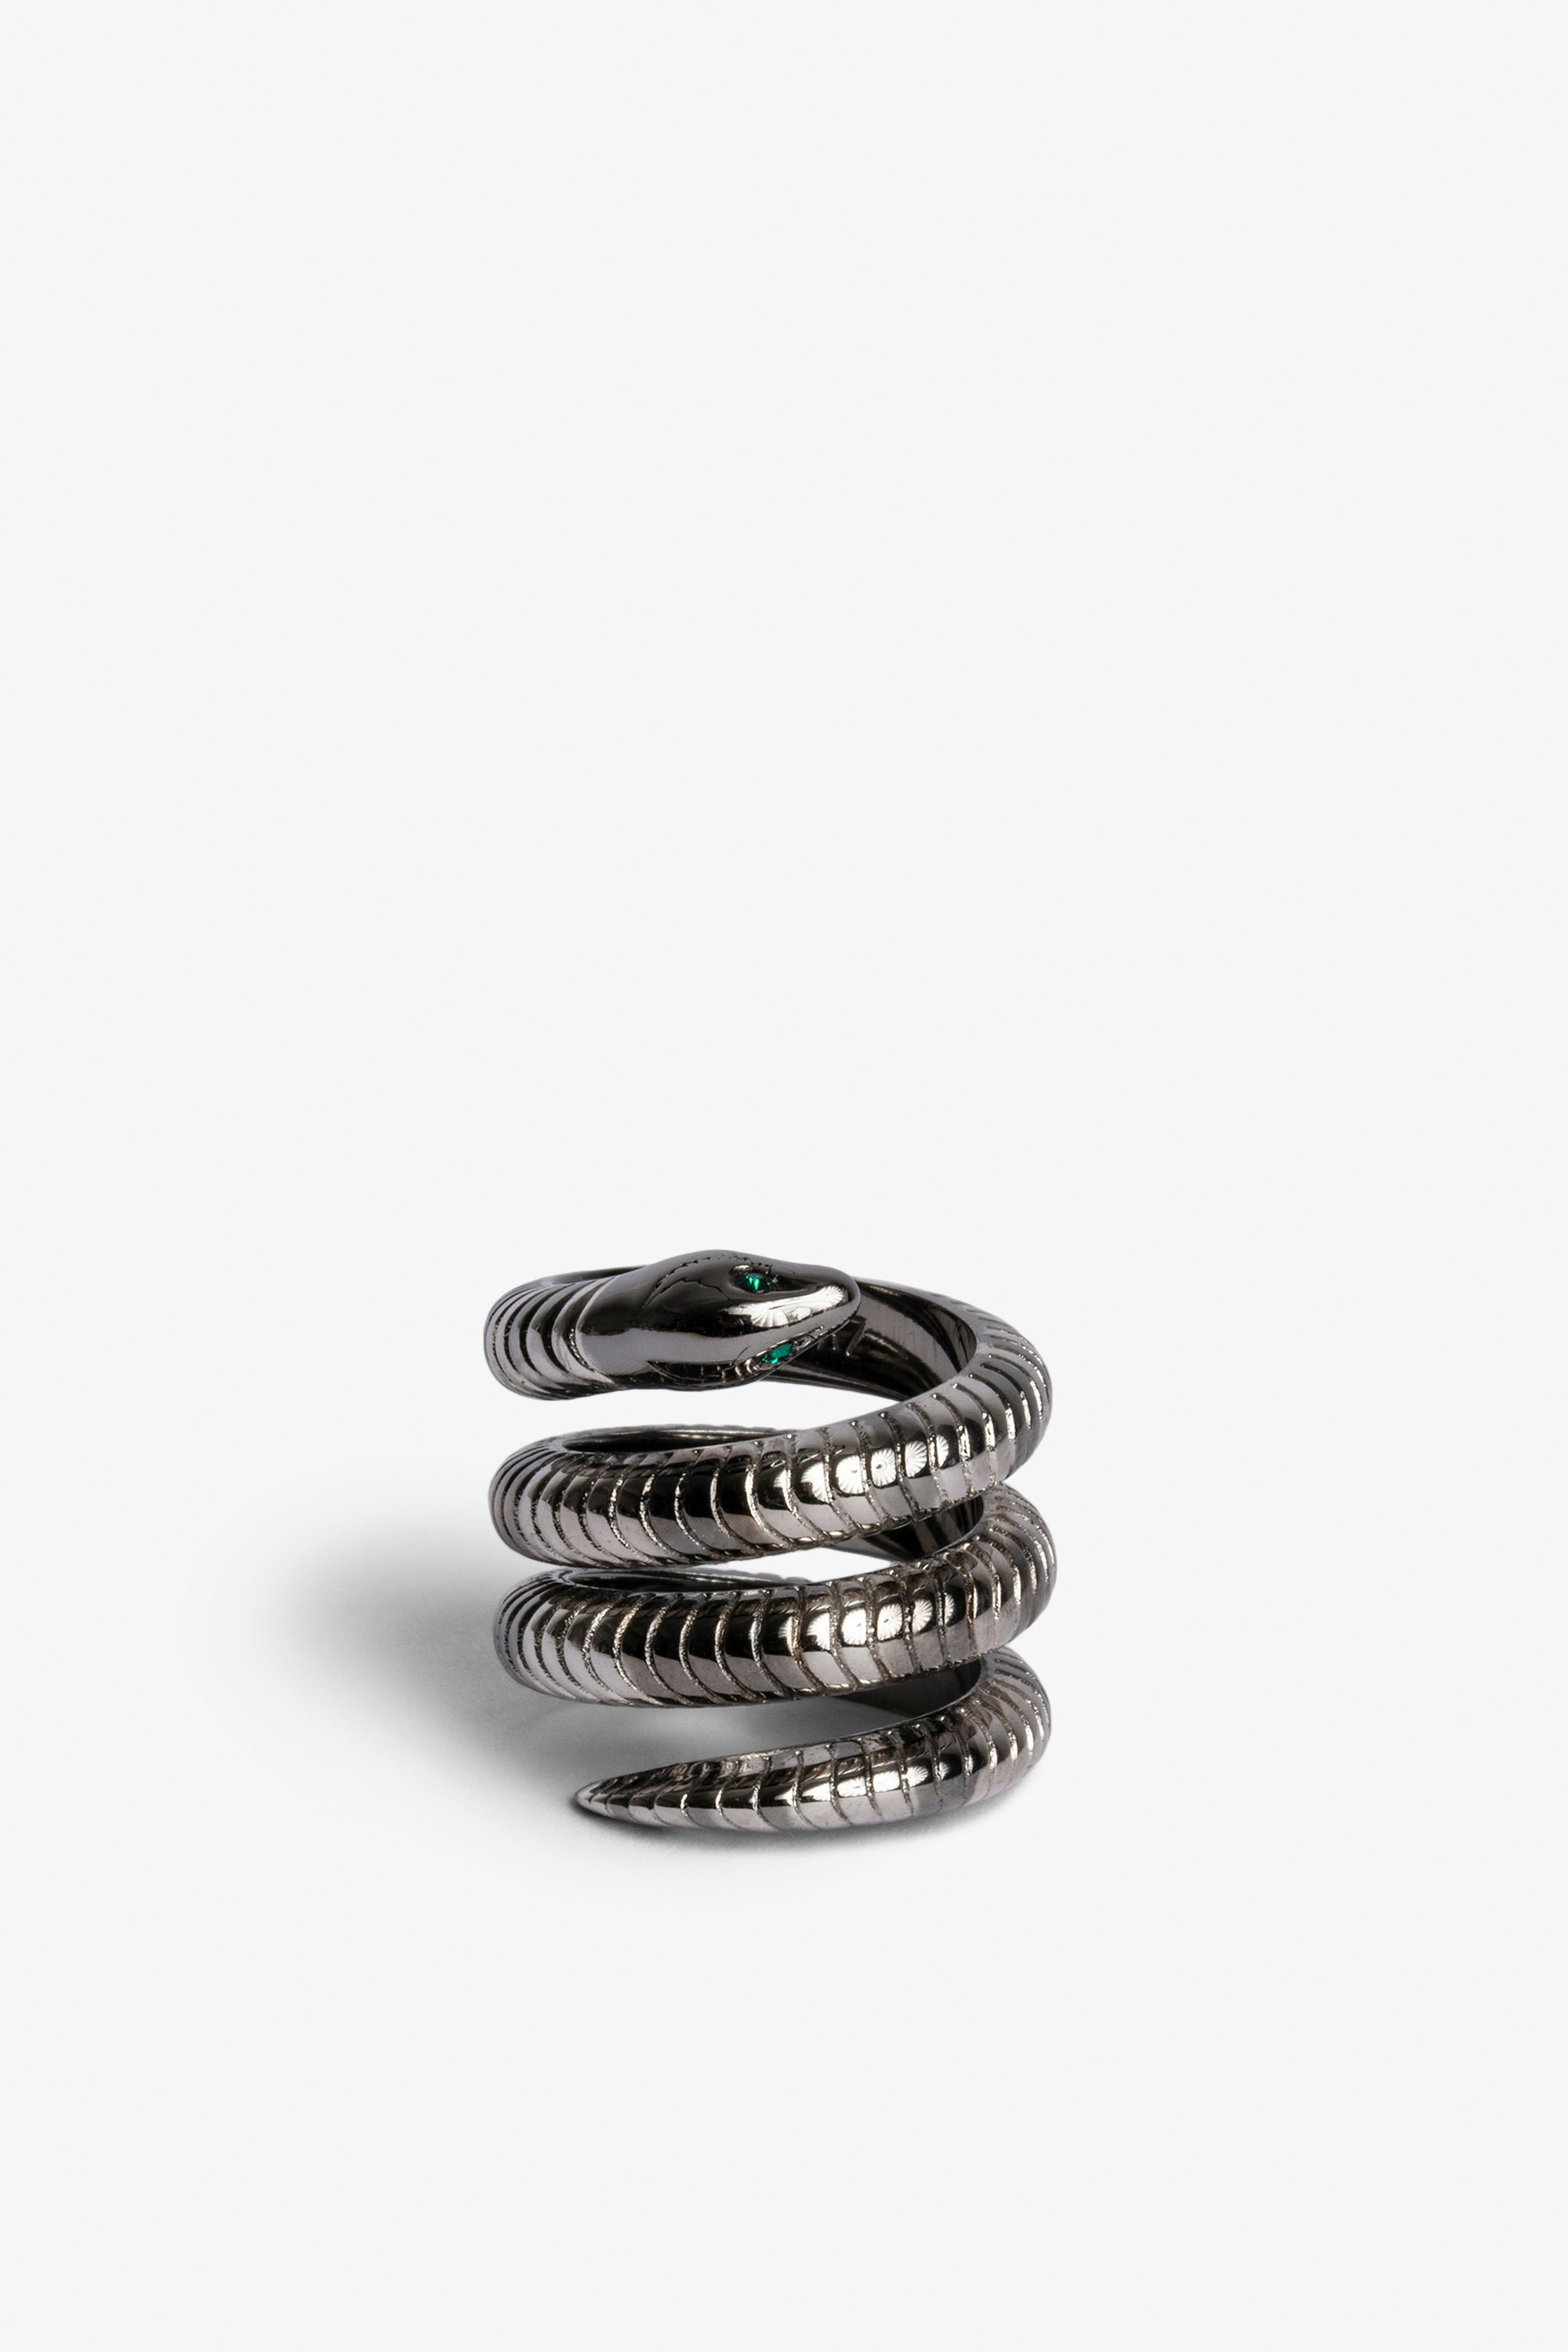 Double Snake 指輪 シルバープレート ブラス製ダブルスネーク リング レディース